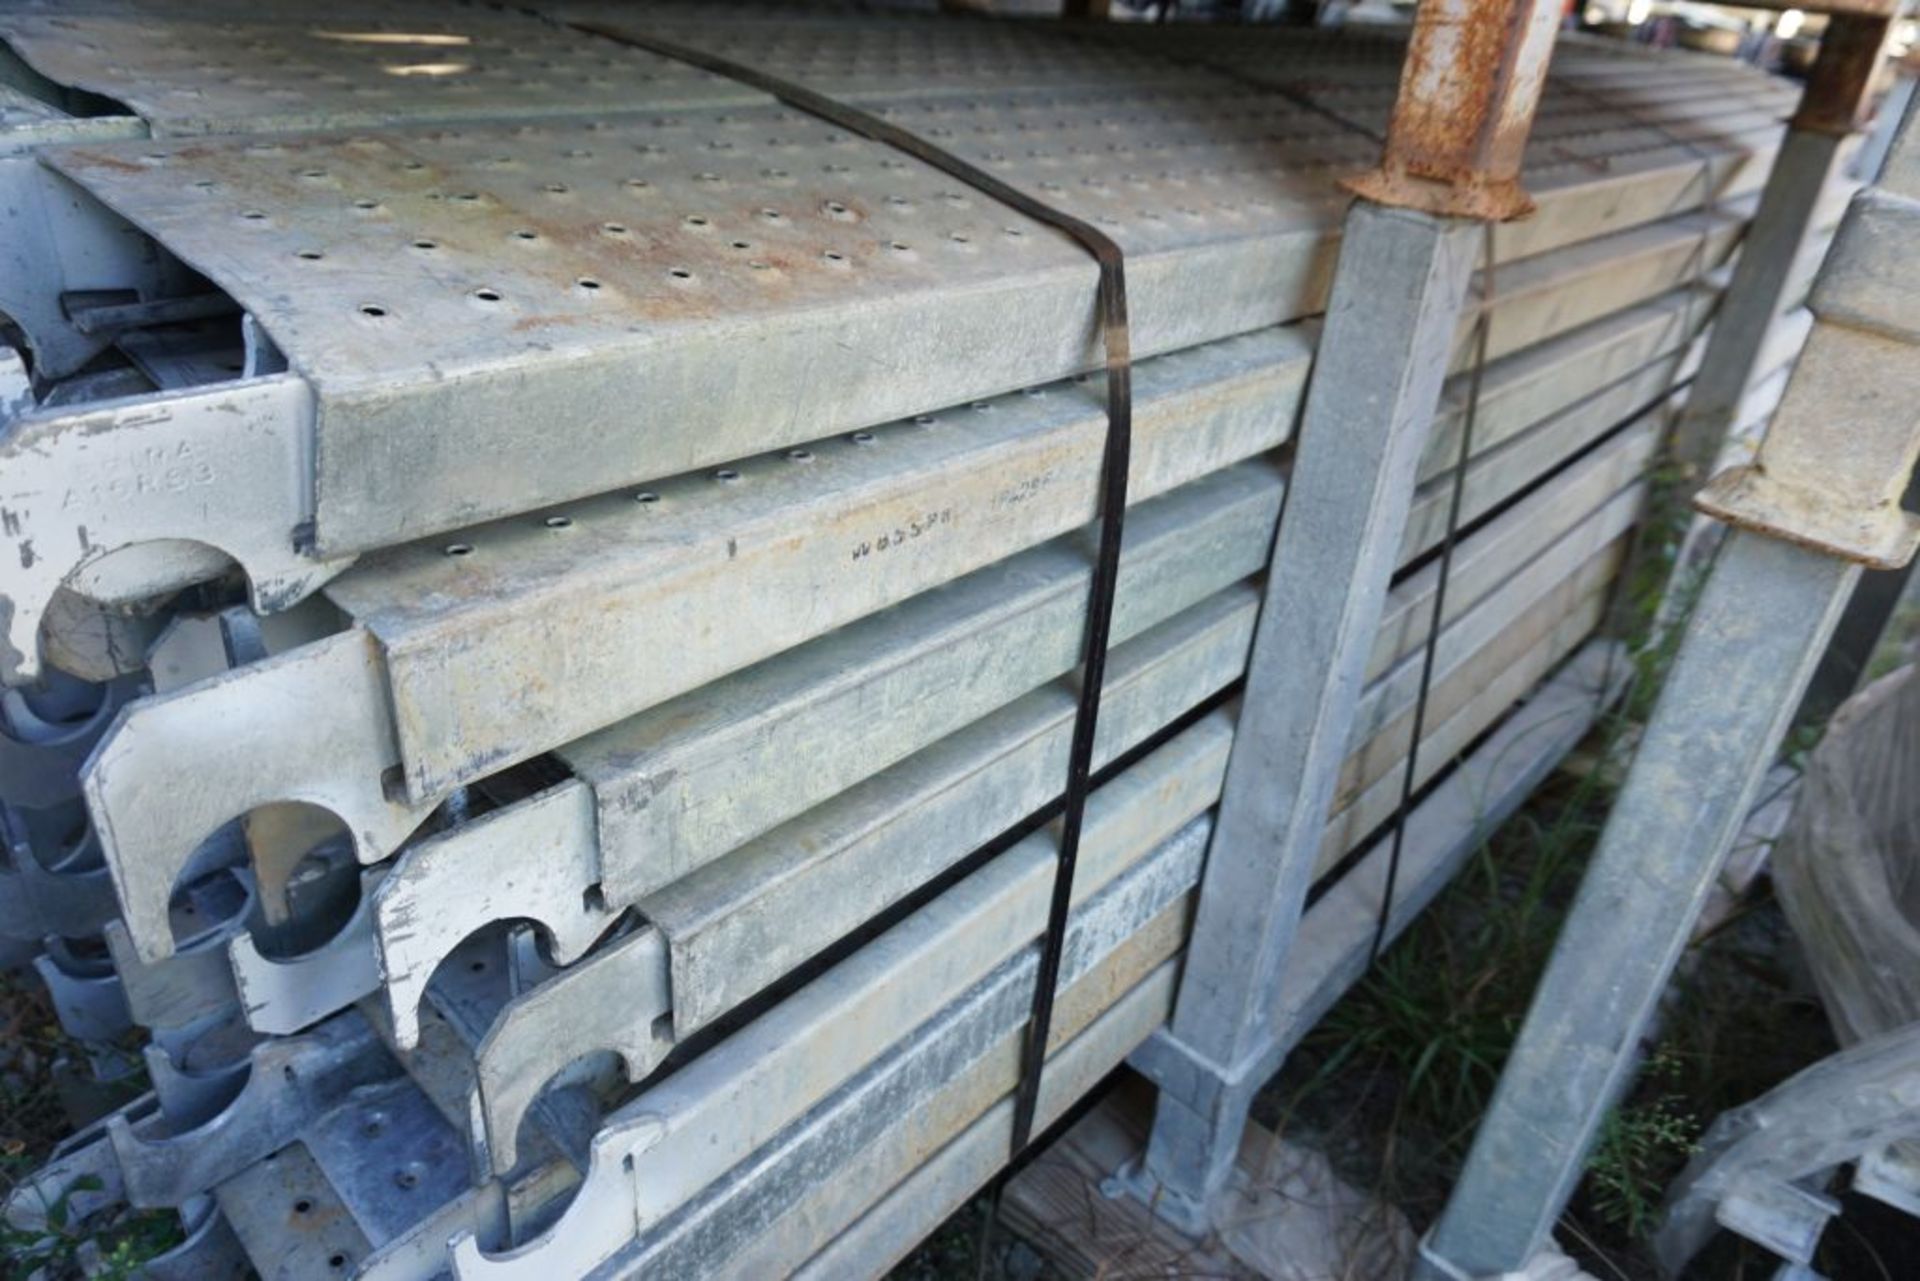 Lot of (256) 8' Steel Plank - 9" Wide - Bay Length 96" (2.44M); Type: WBSSP8 - (4) Racks Per Lot - - Image 6 of 14